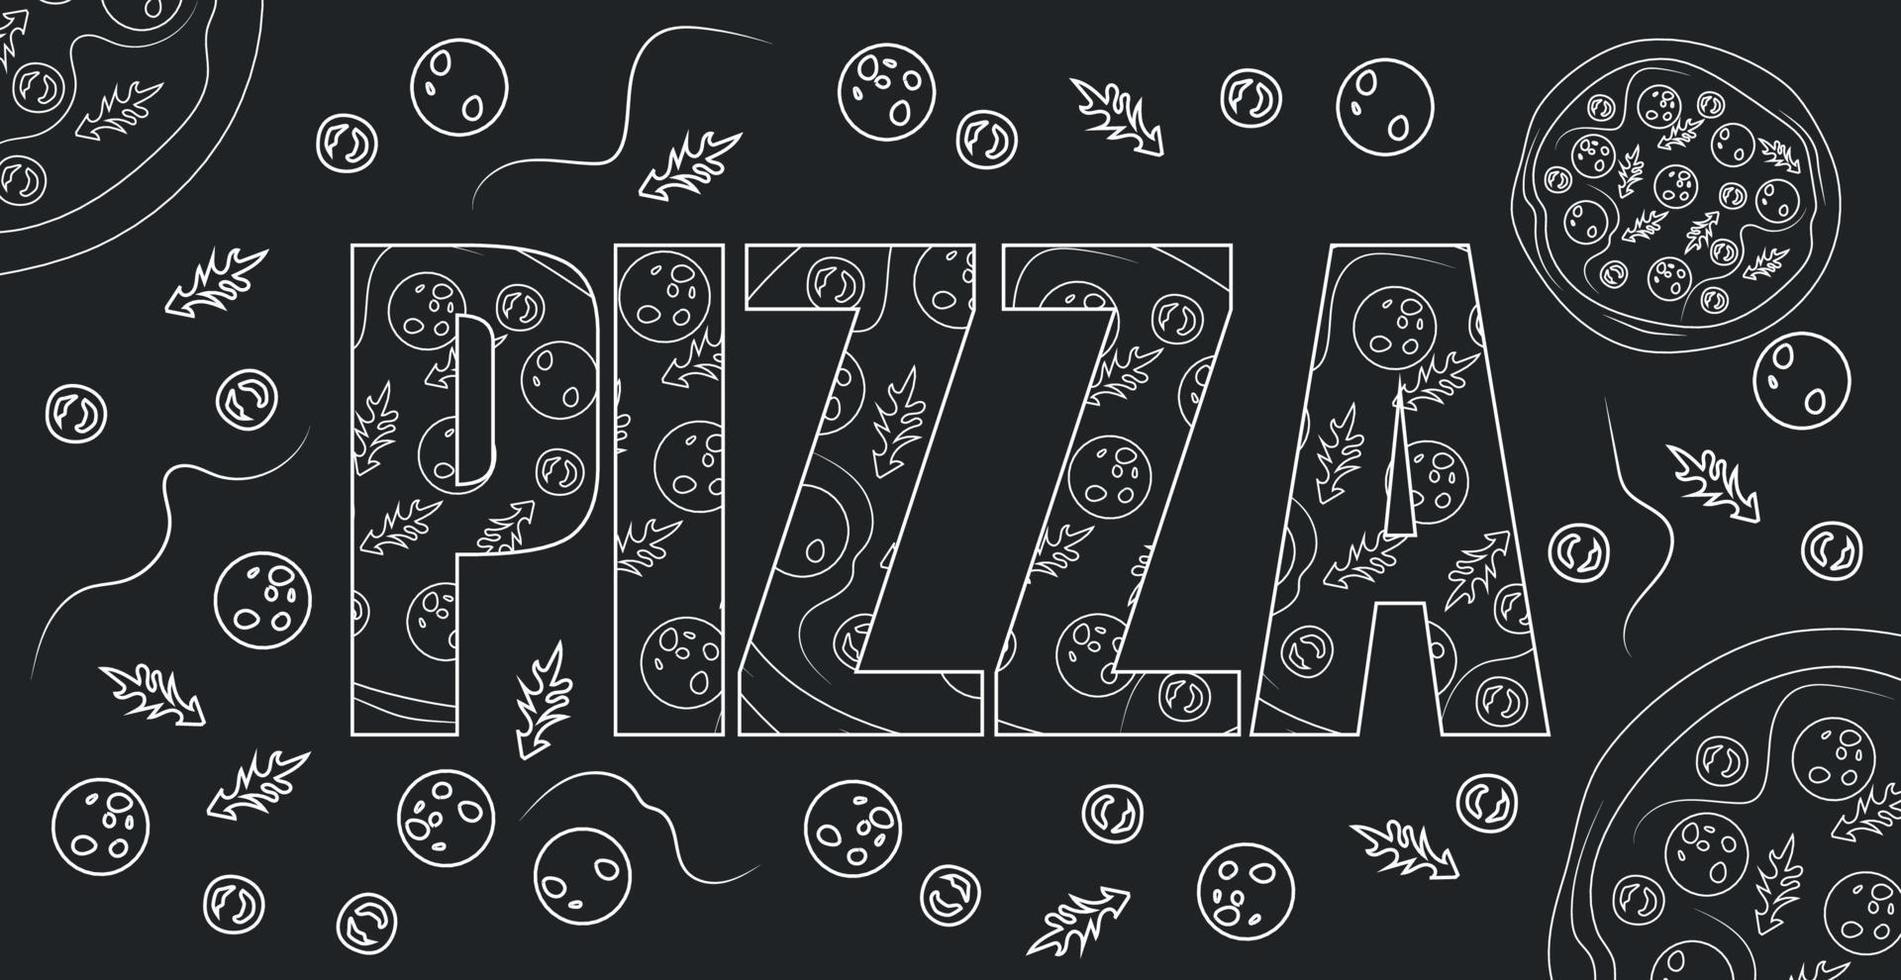 pizza de palabra estilizada como un logotipo elegante - vector